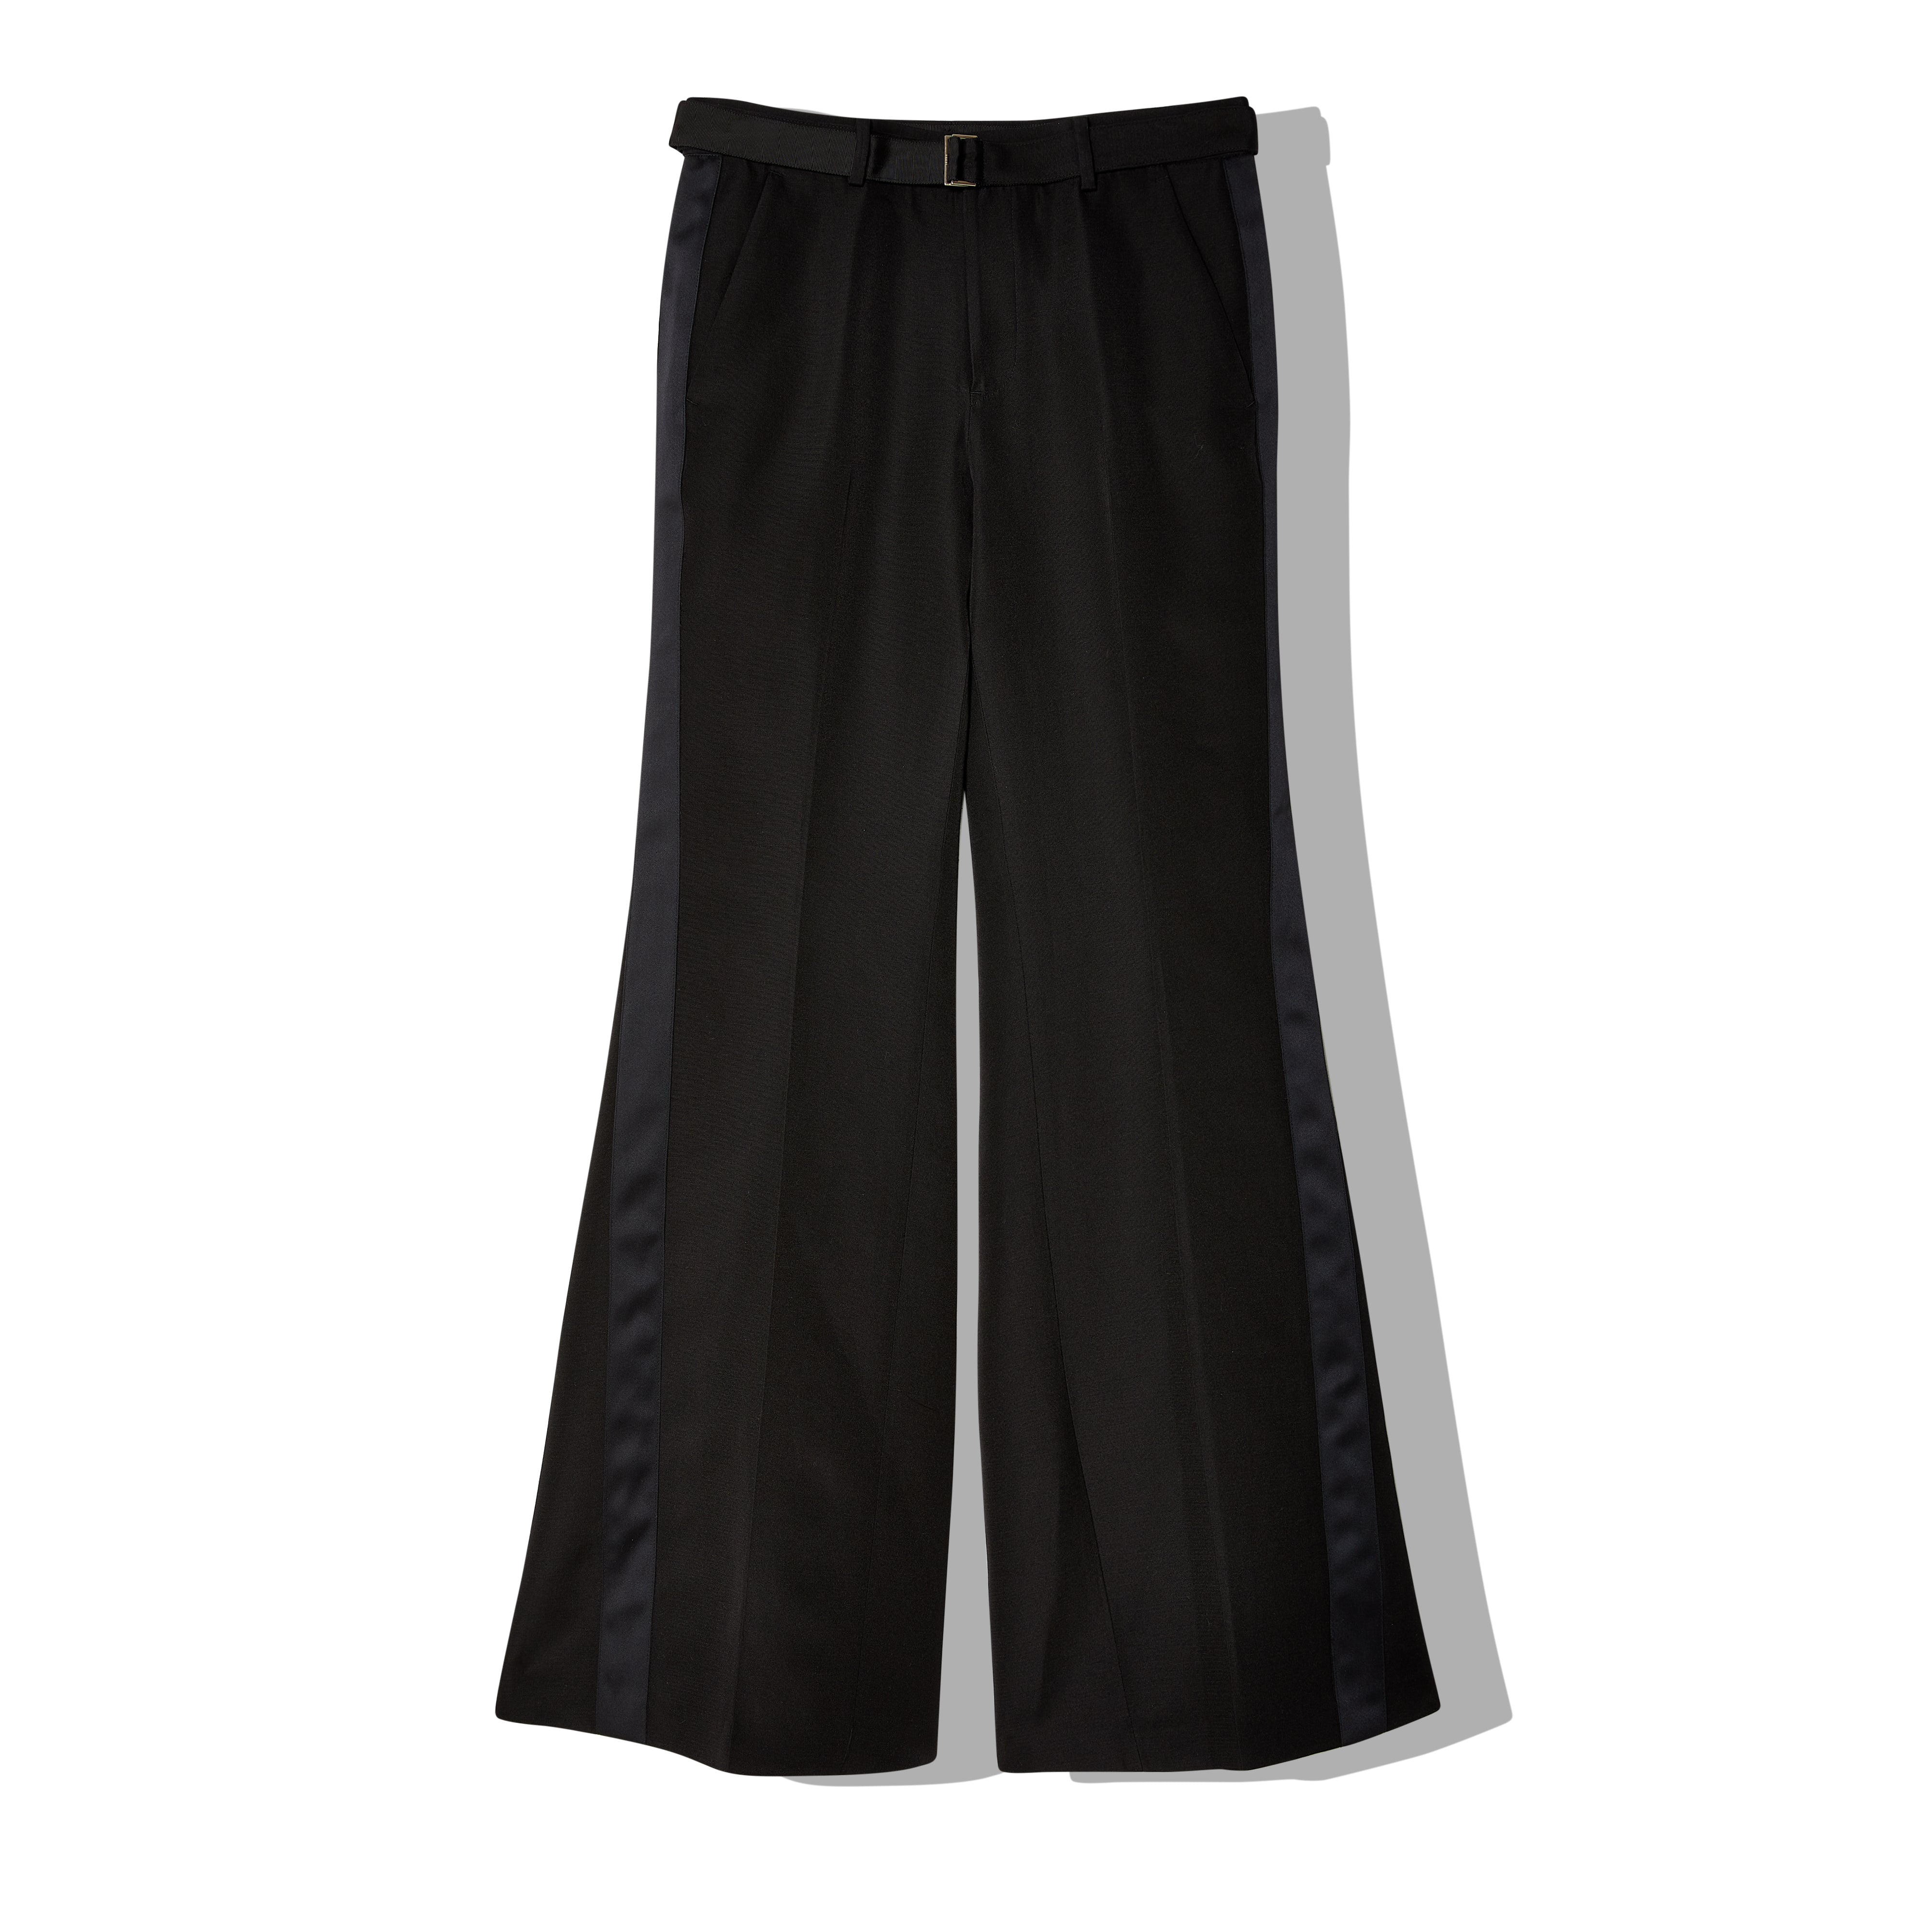 Sacai - Women's Double-Faced Pants - (Black) – DSMNY E-SHOP